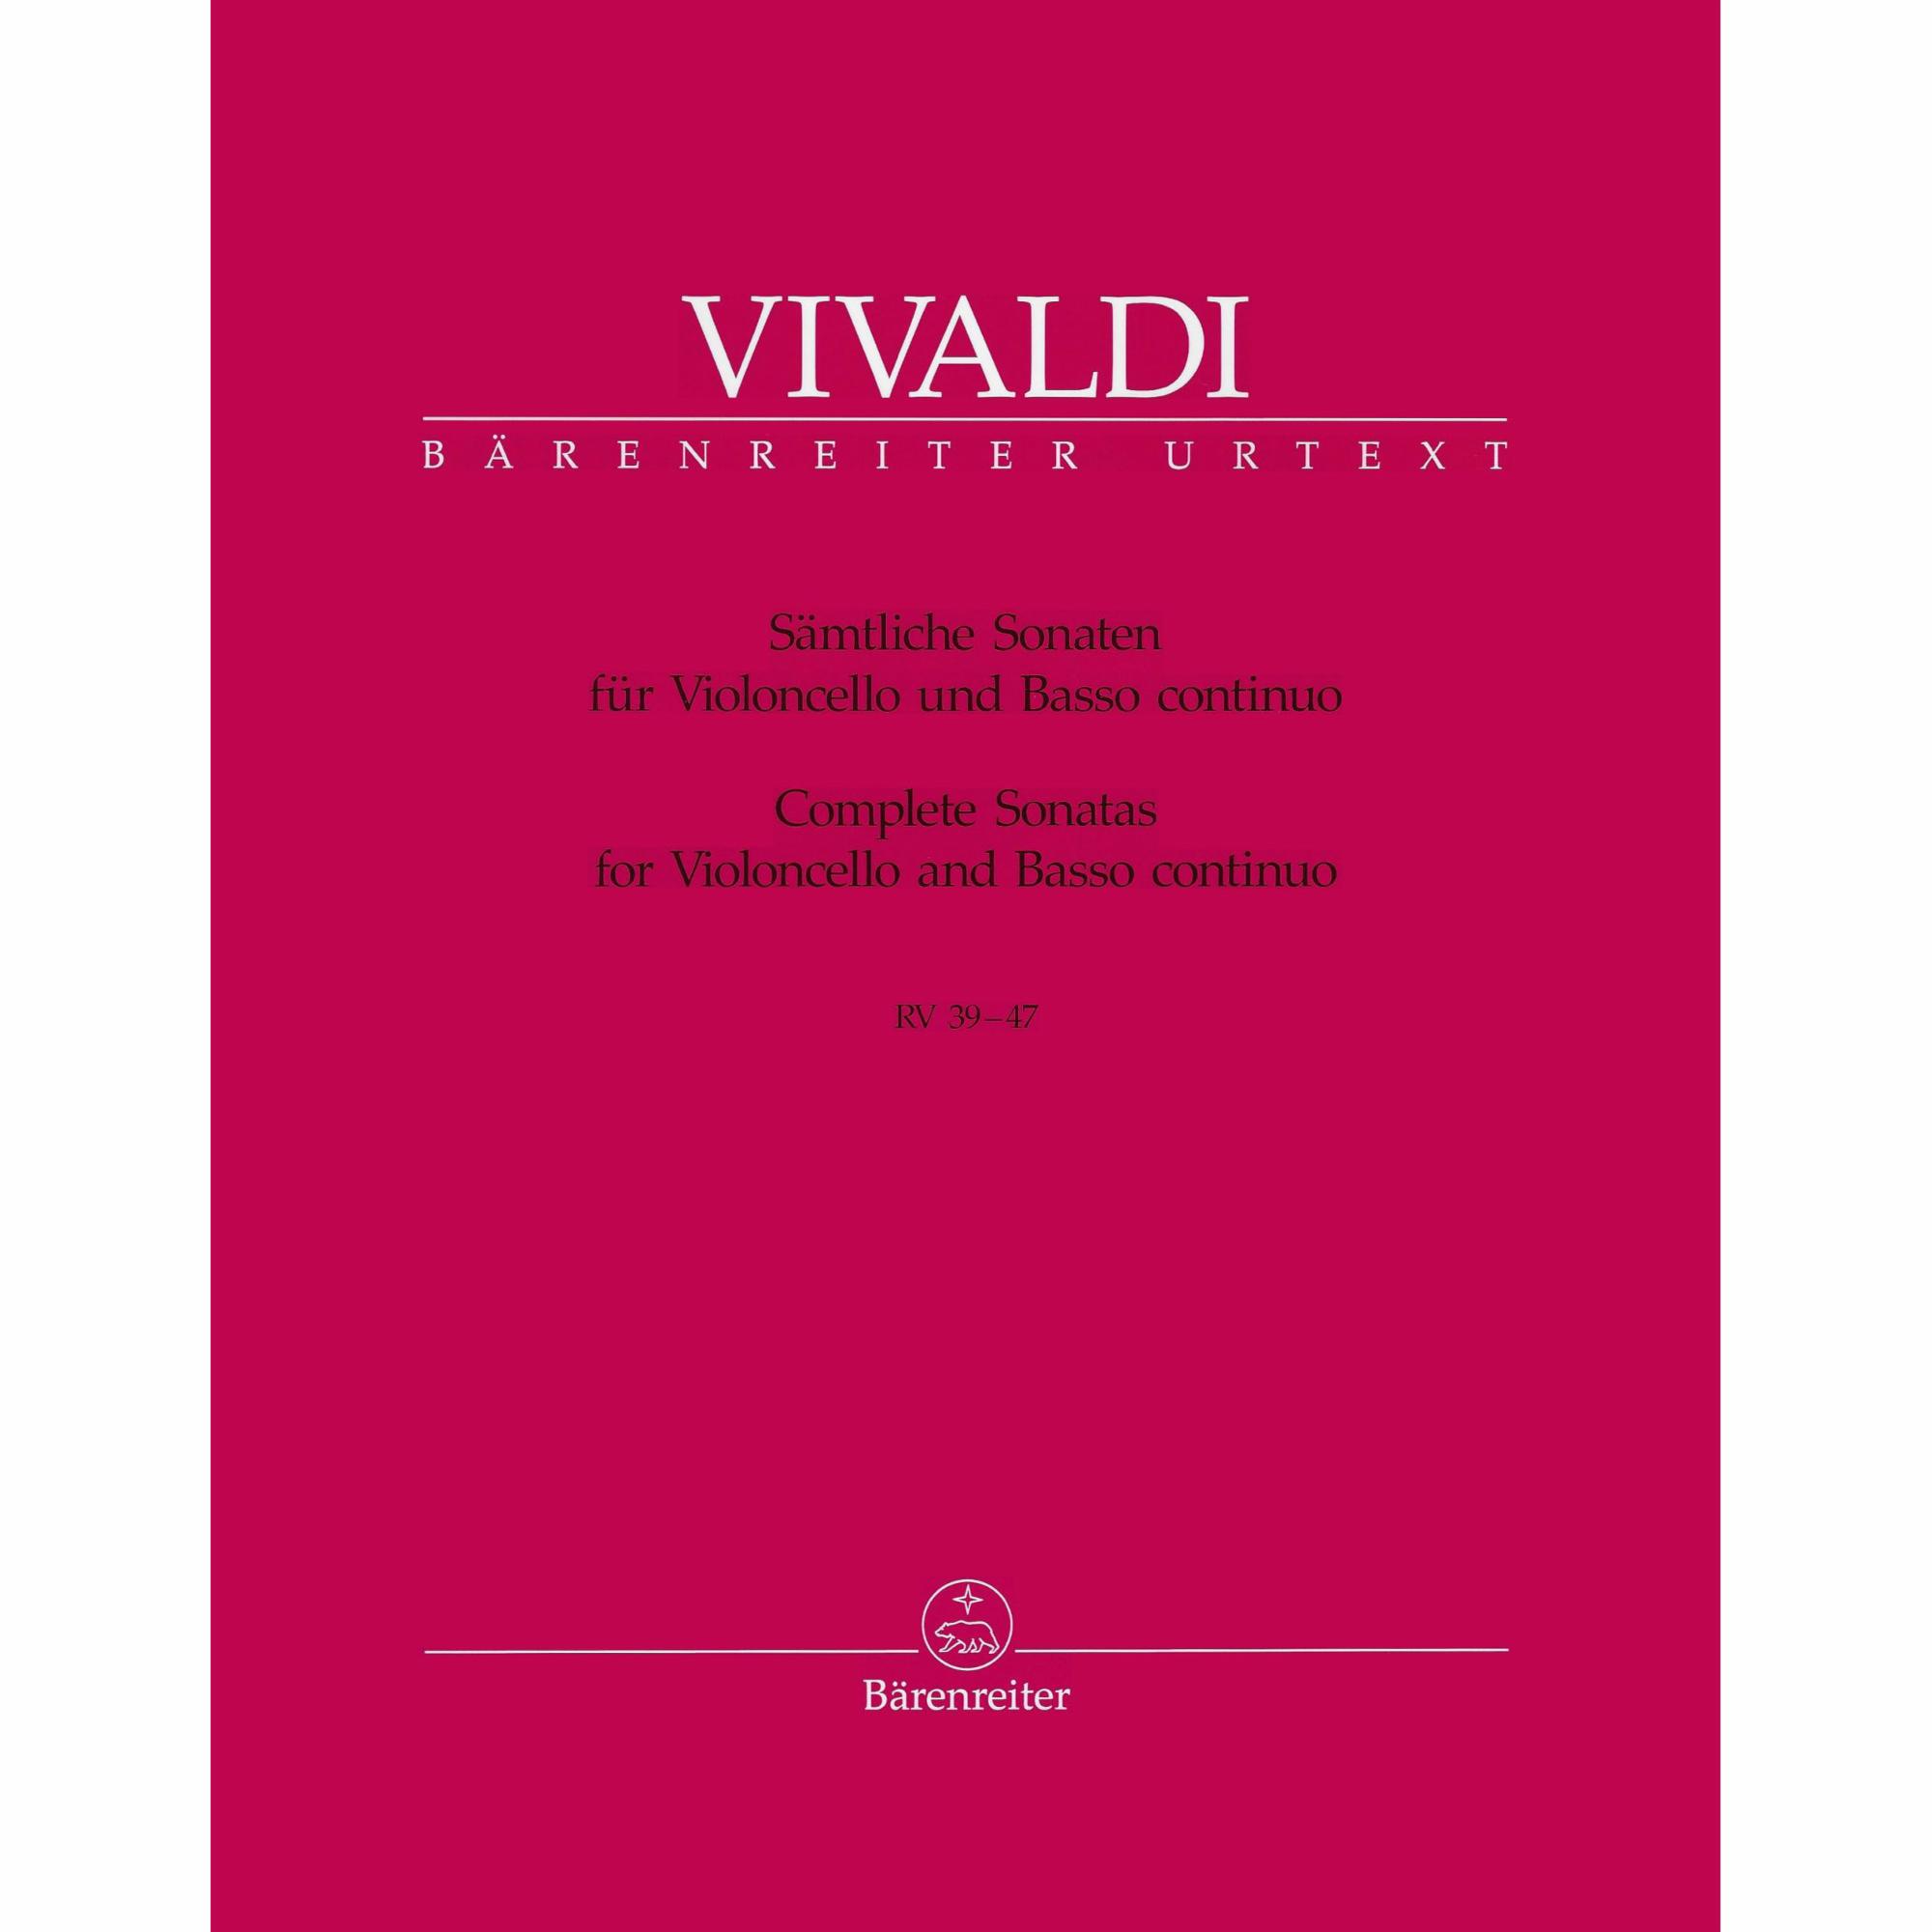 Vivaldi -- Complete Sonatas, RV 39-47 for Violoncello and Basso Continuo